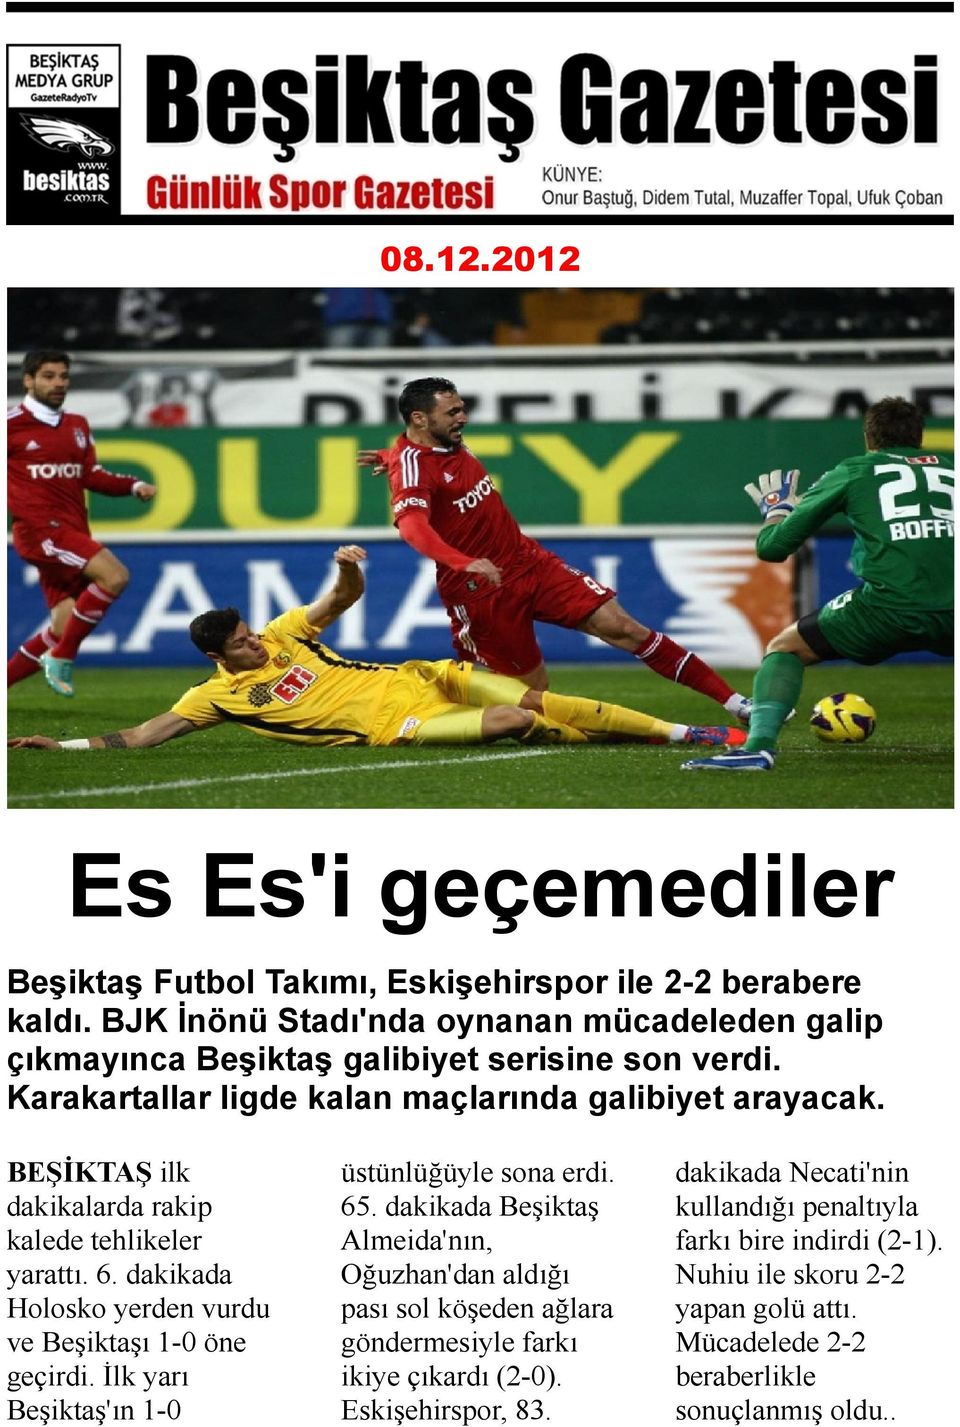 BEŞİKTAŞ ilk dakikalarda rakip kalede tehlikeler yarattı. 6. dakikada Holosko yerden vurdu ve Beşiktaşı 1-0 öne geçirdi. İlk yarı Beşiktaş'ın 1-0 üstünlüğüyle sona erdi. 65.